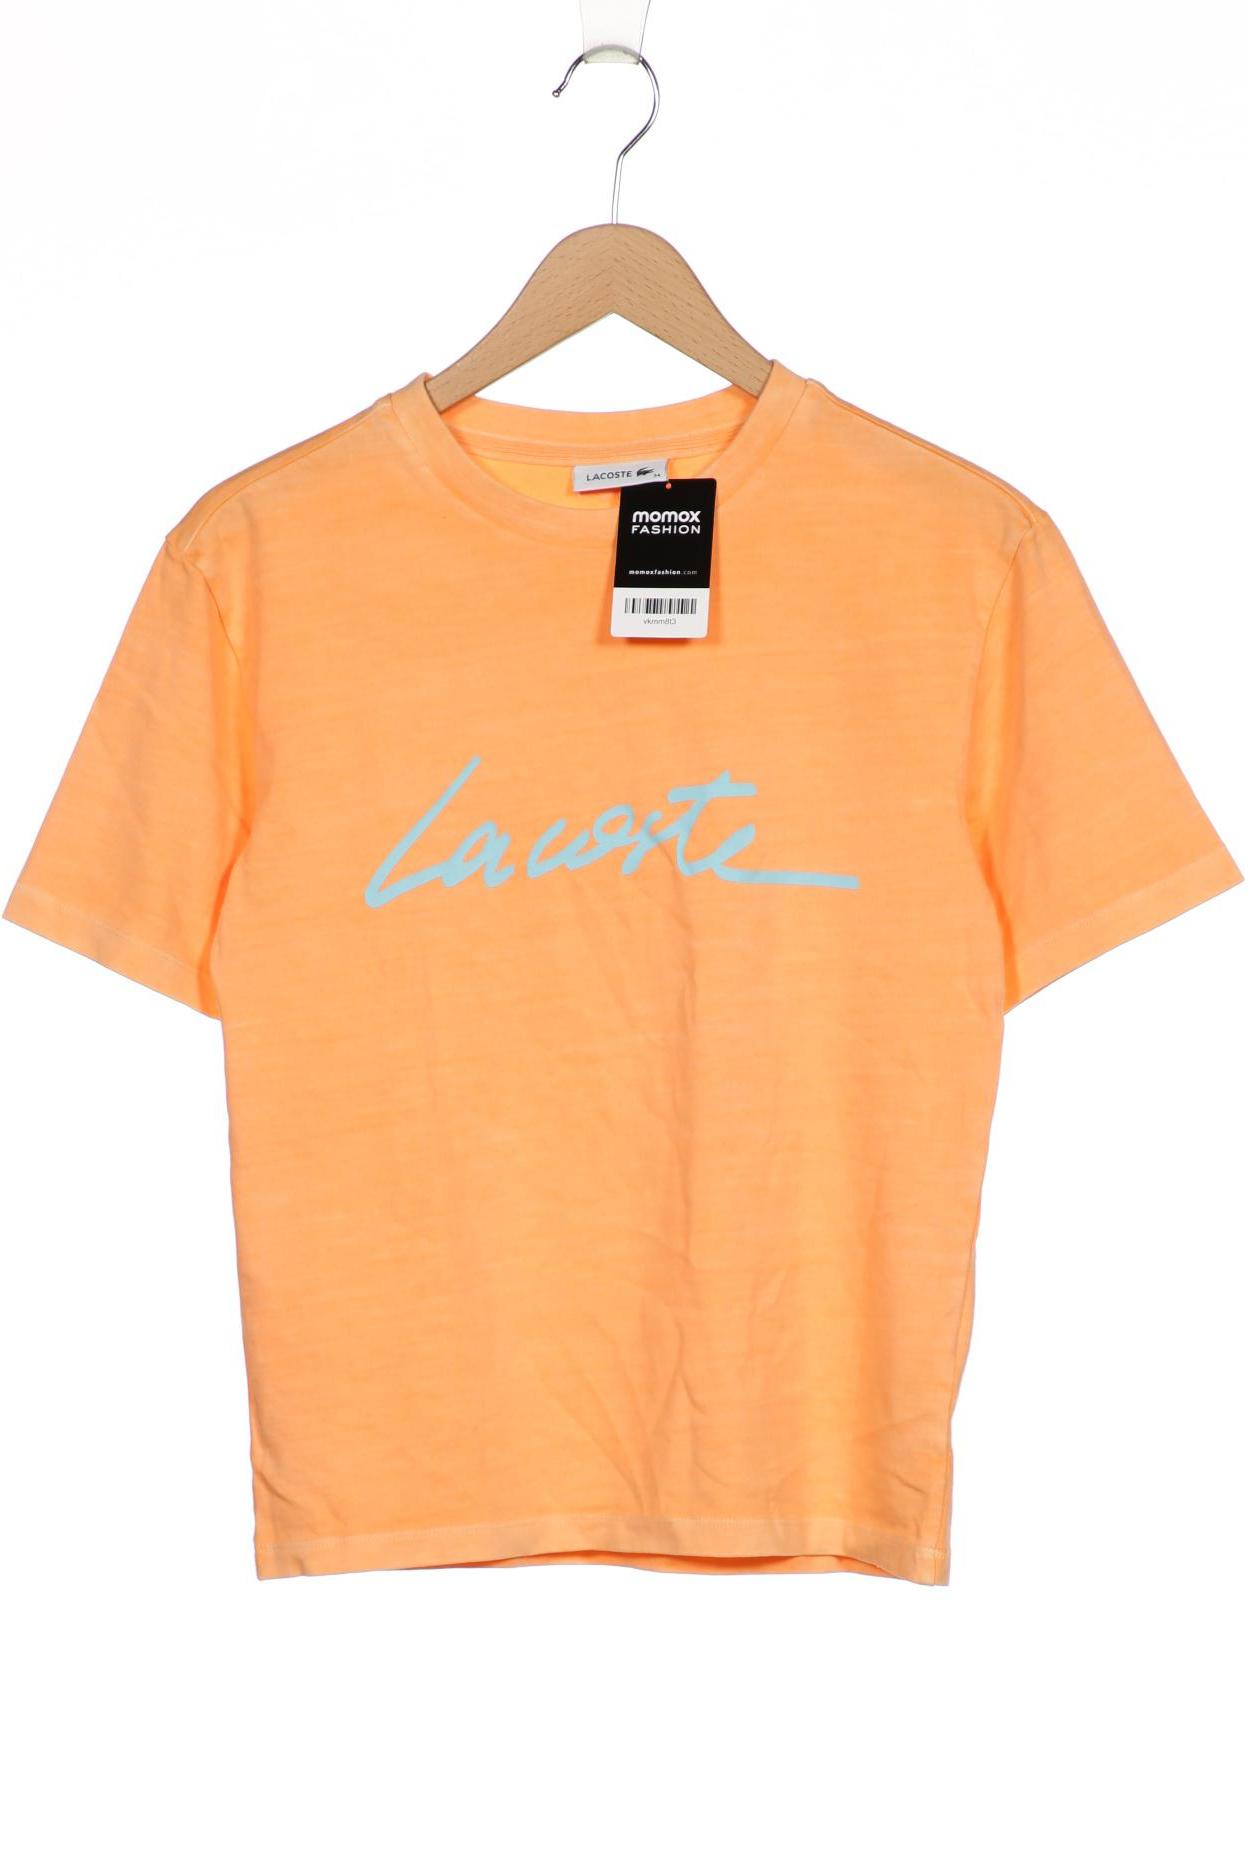 Lacoste Damen T-Shirt, orange von Lacoste